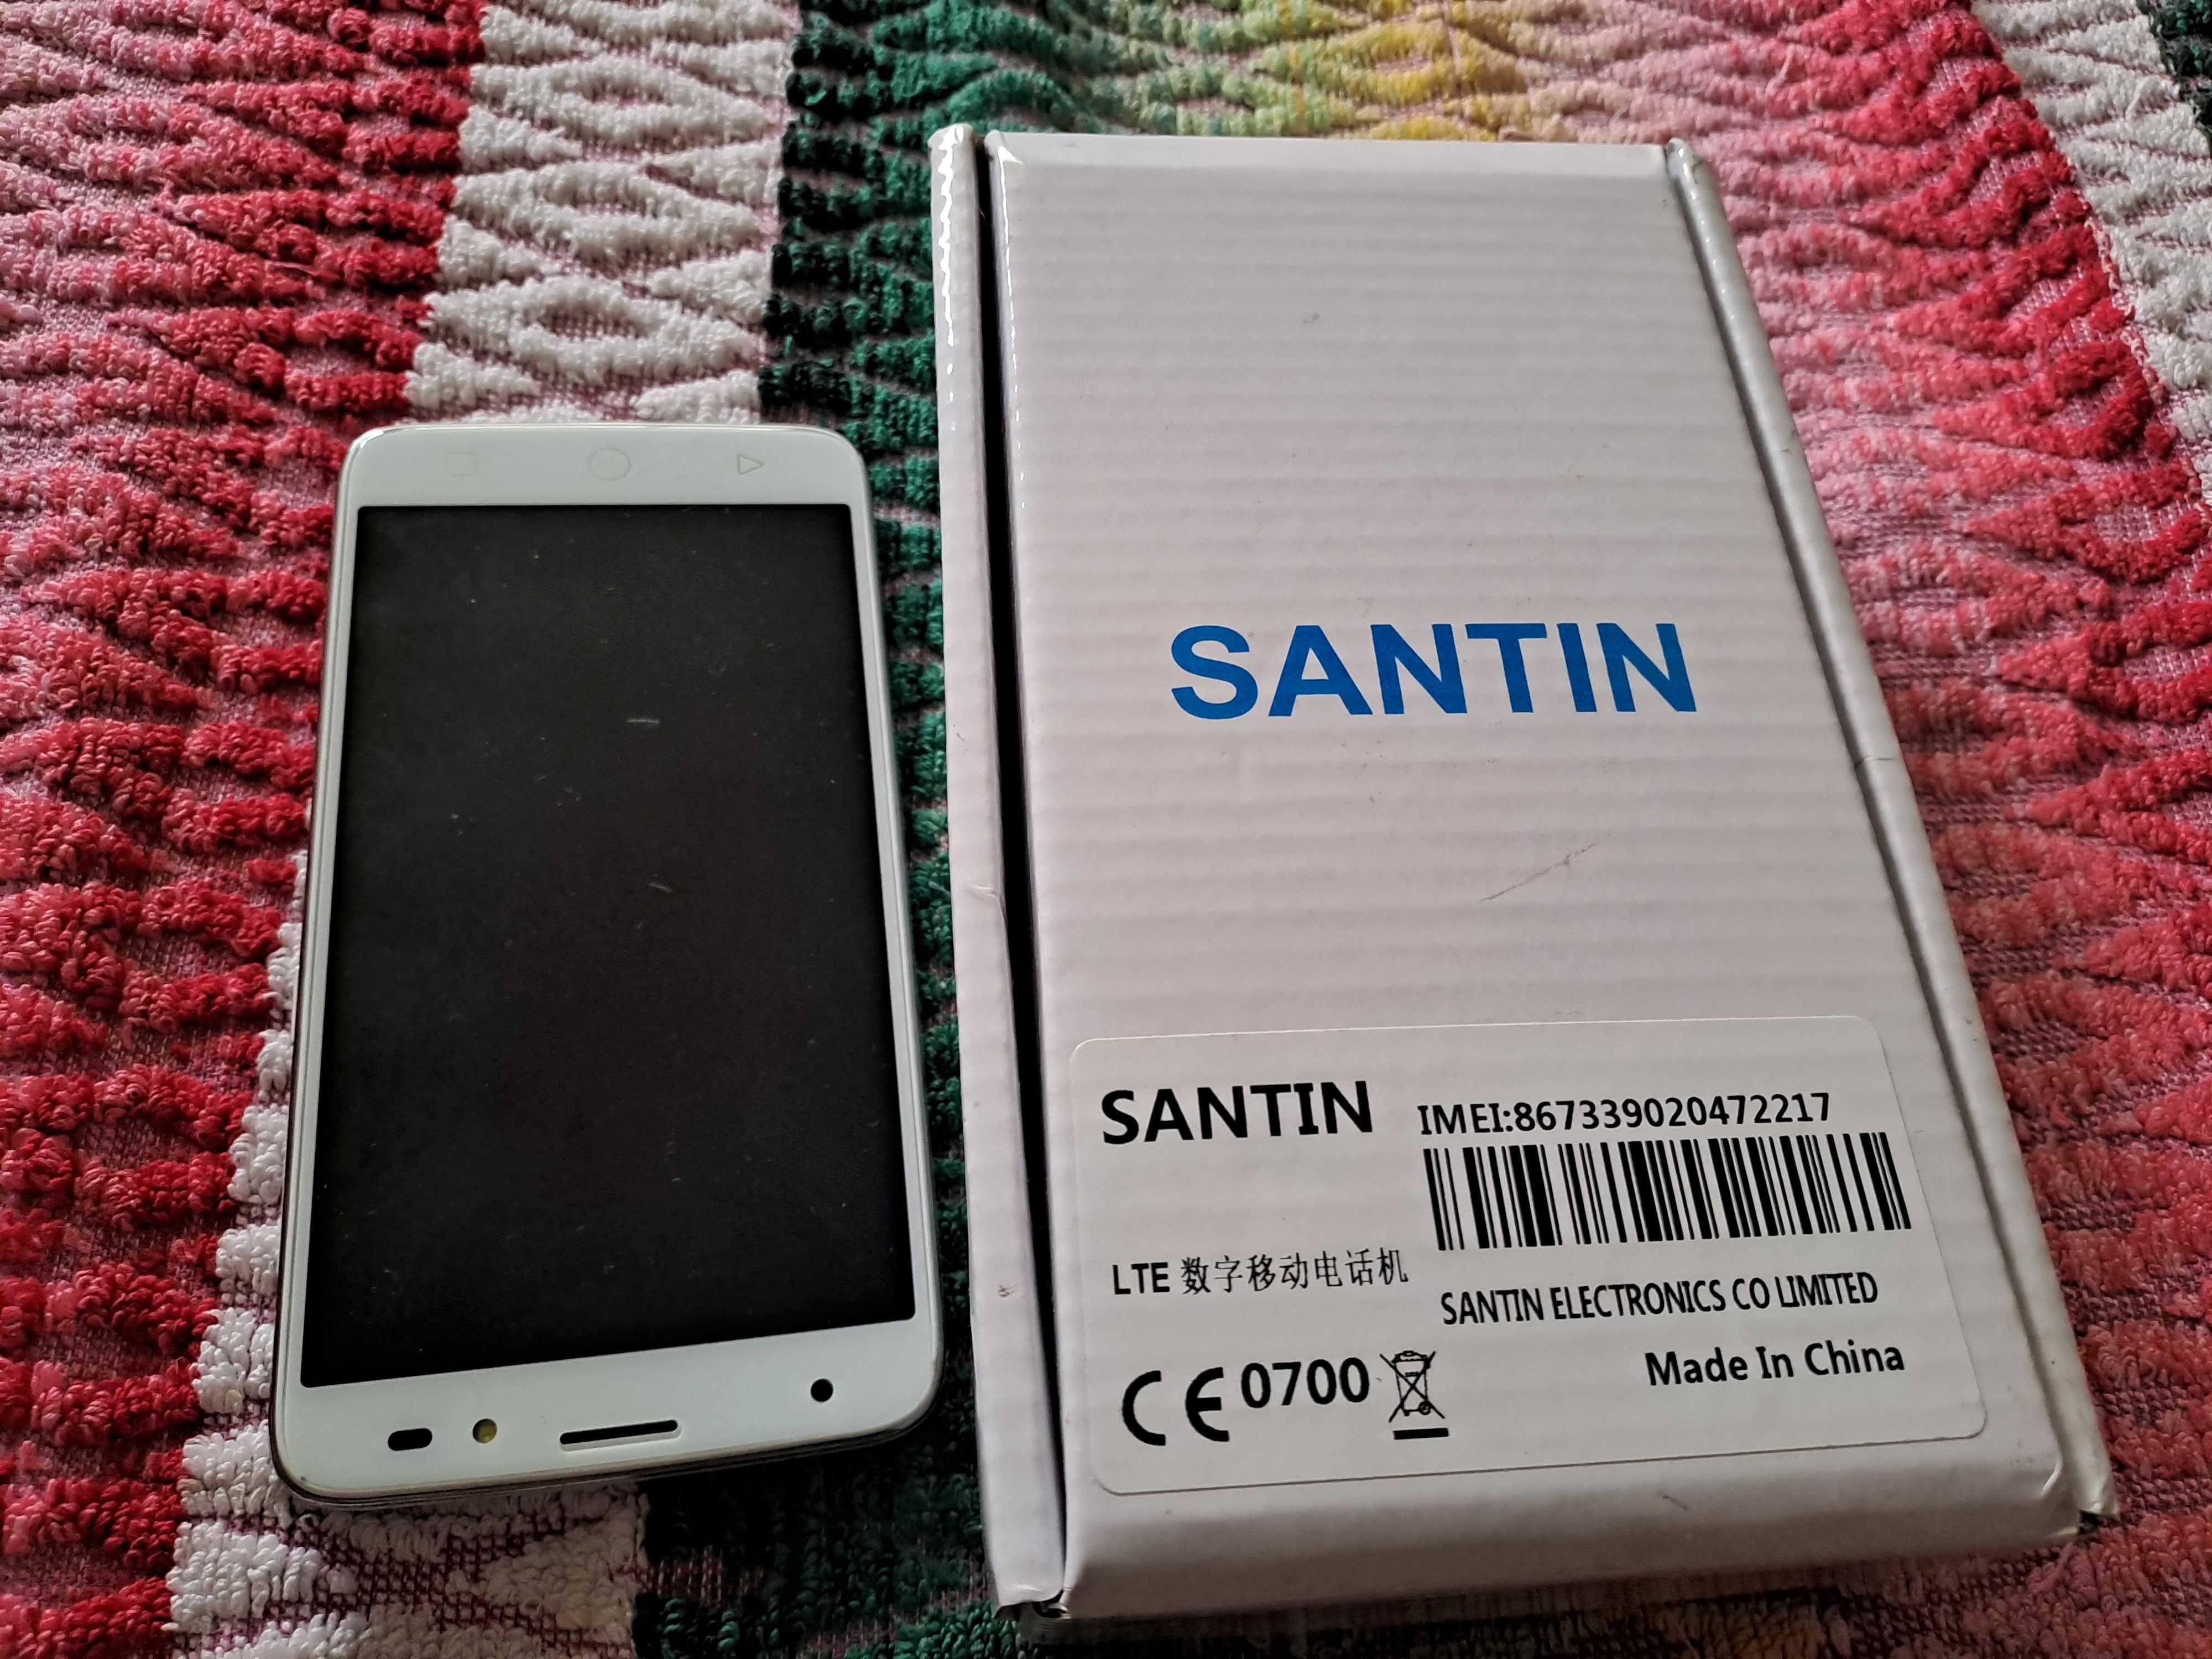 Santin S505 telefon nou